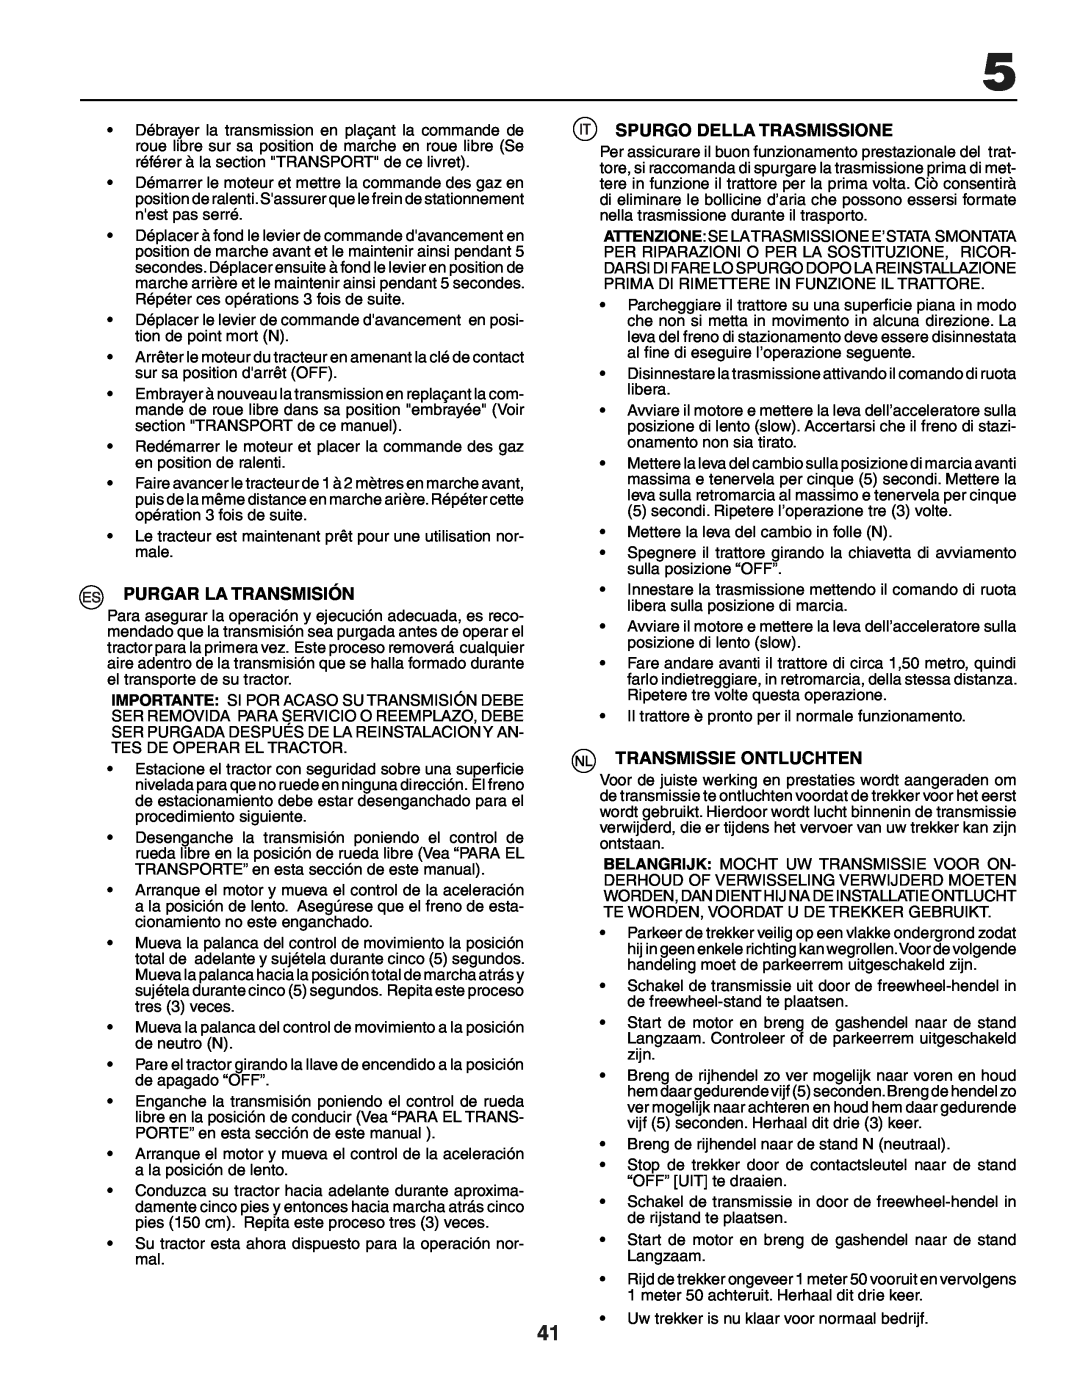 Husqvarna YTH151 instruction manual Purgar La Transmisión, Spurgo Della Trasmissione, Transmissie Ontluchten 